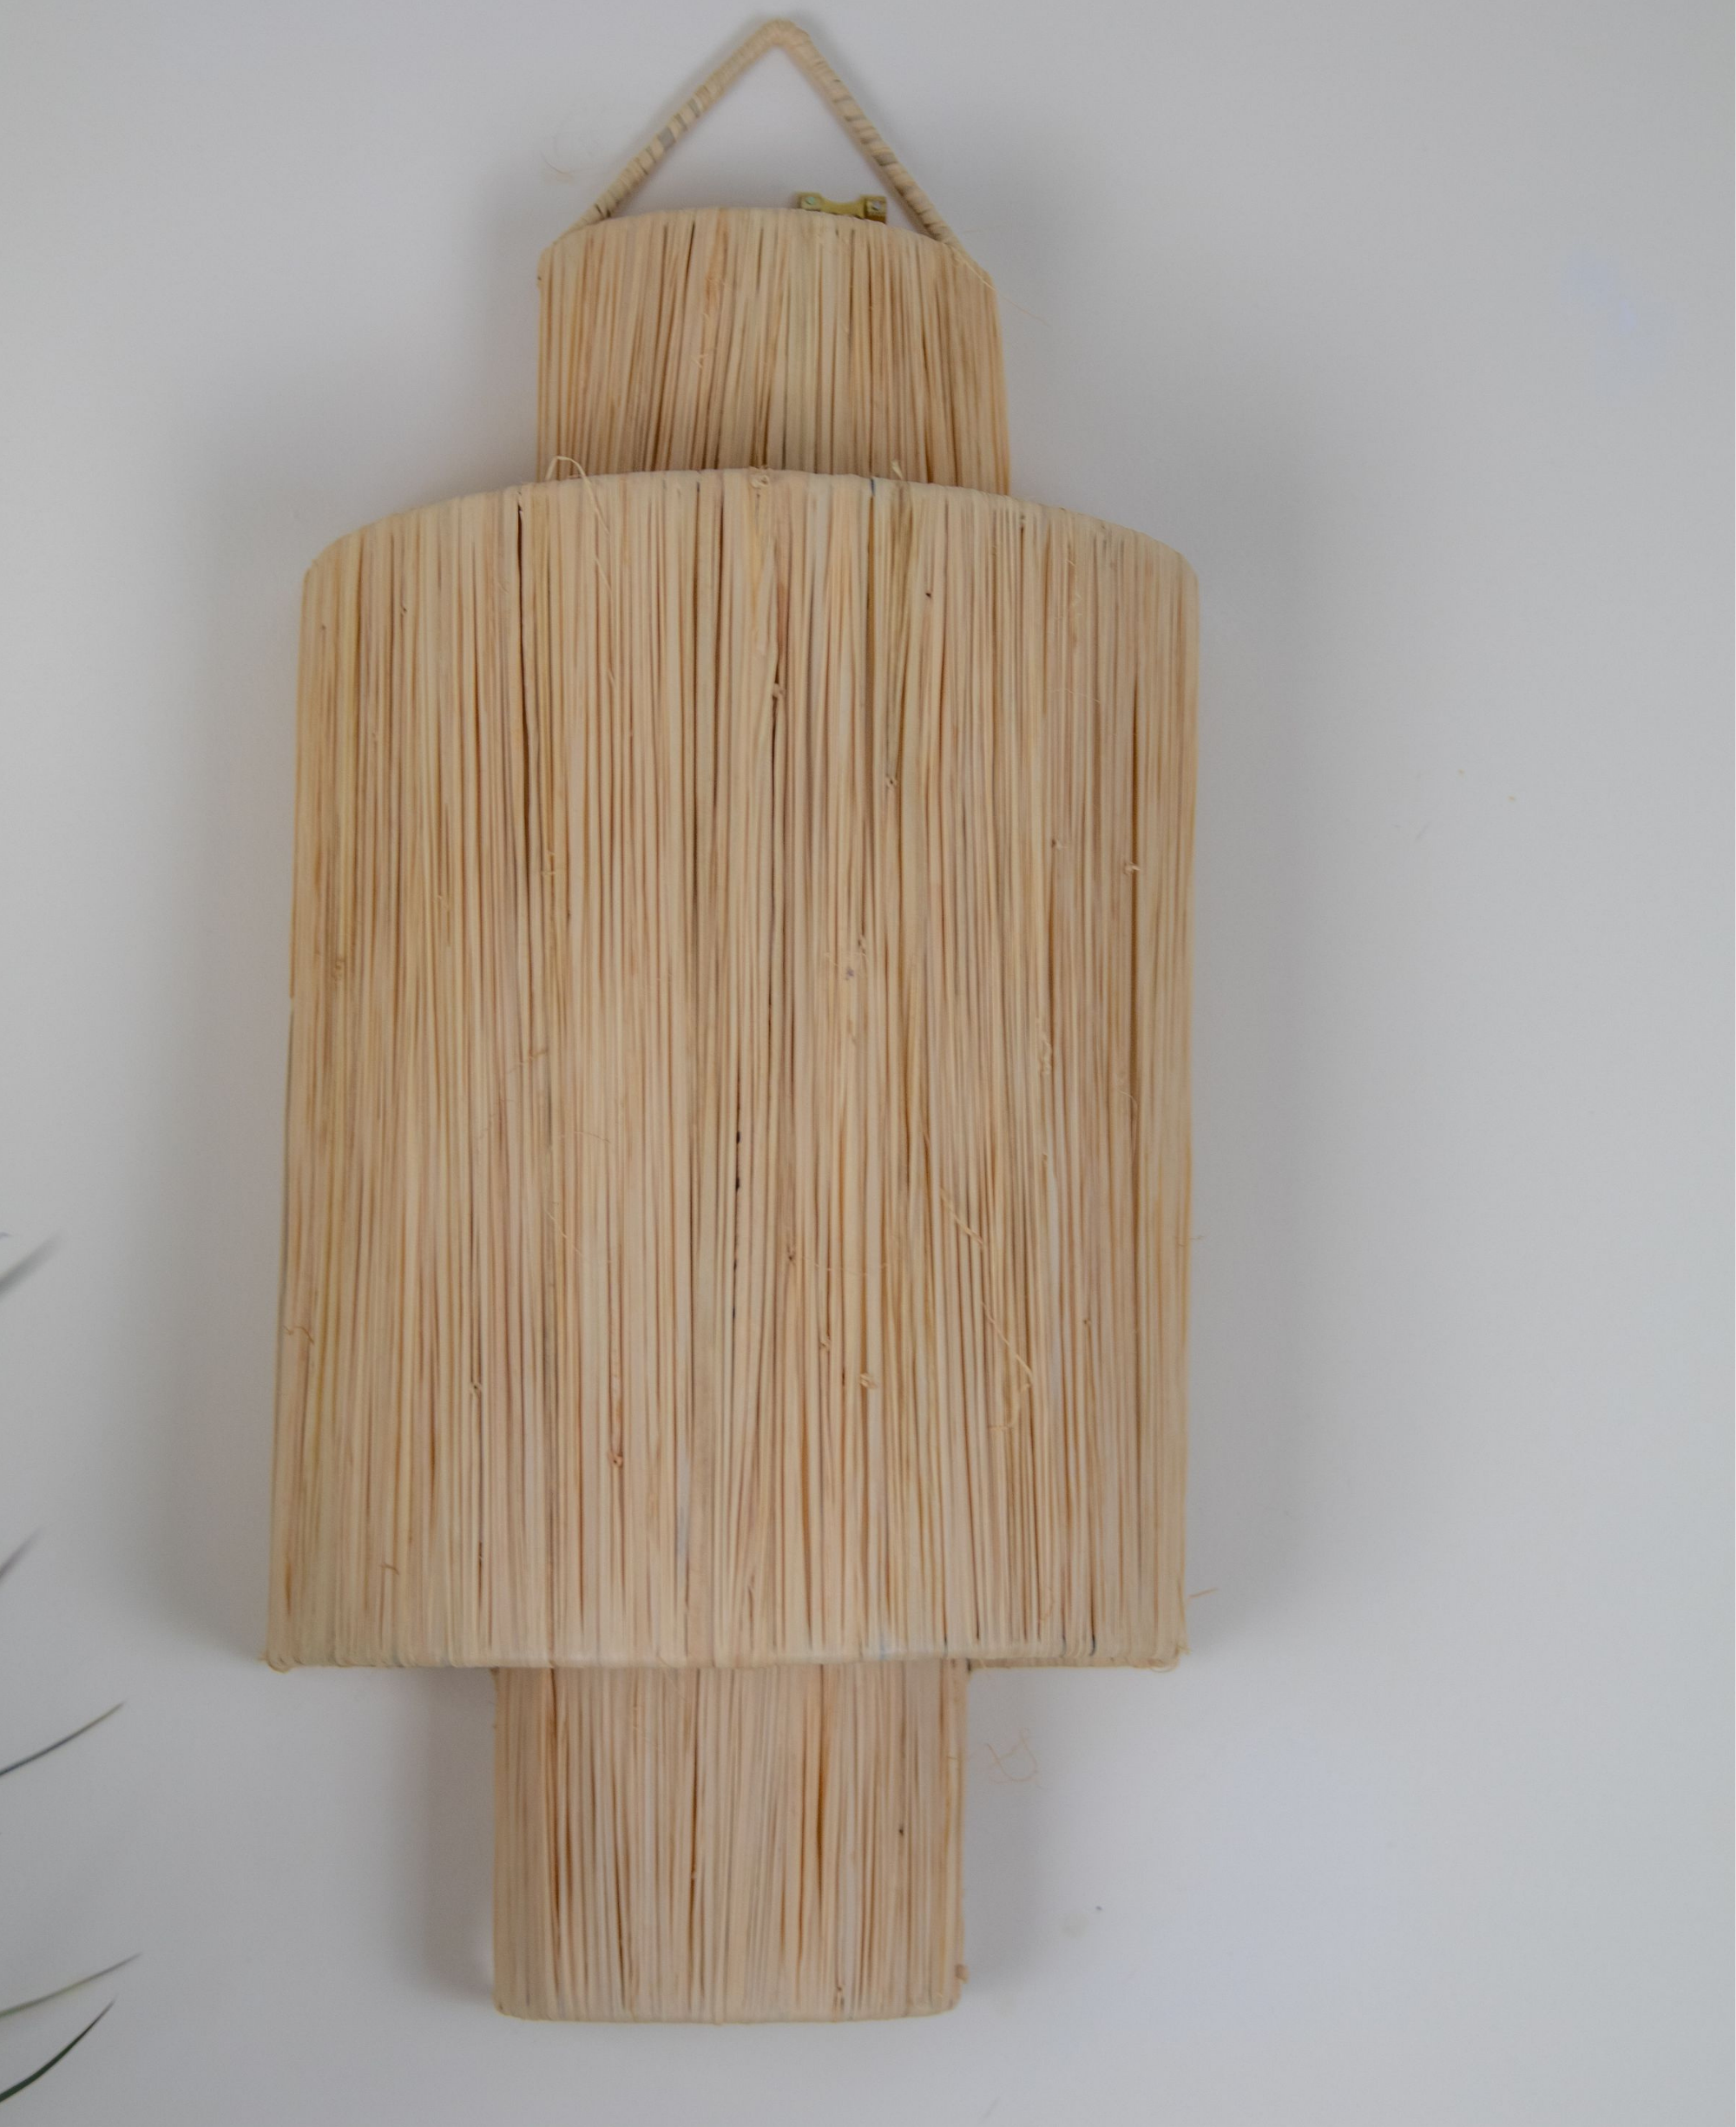 Raffia Wall Light Fixture - Wicker Wall Light Fixture with Stylish Lampshade - Raffia Wall Lamp